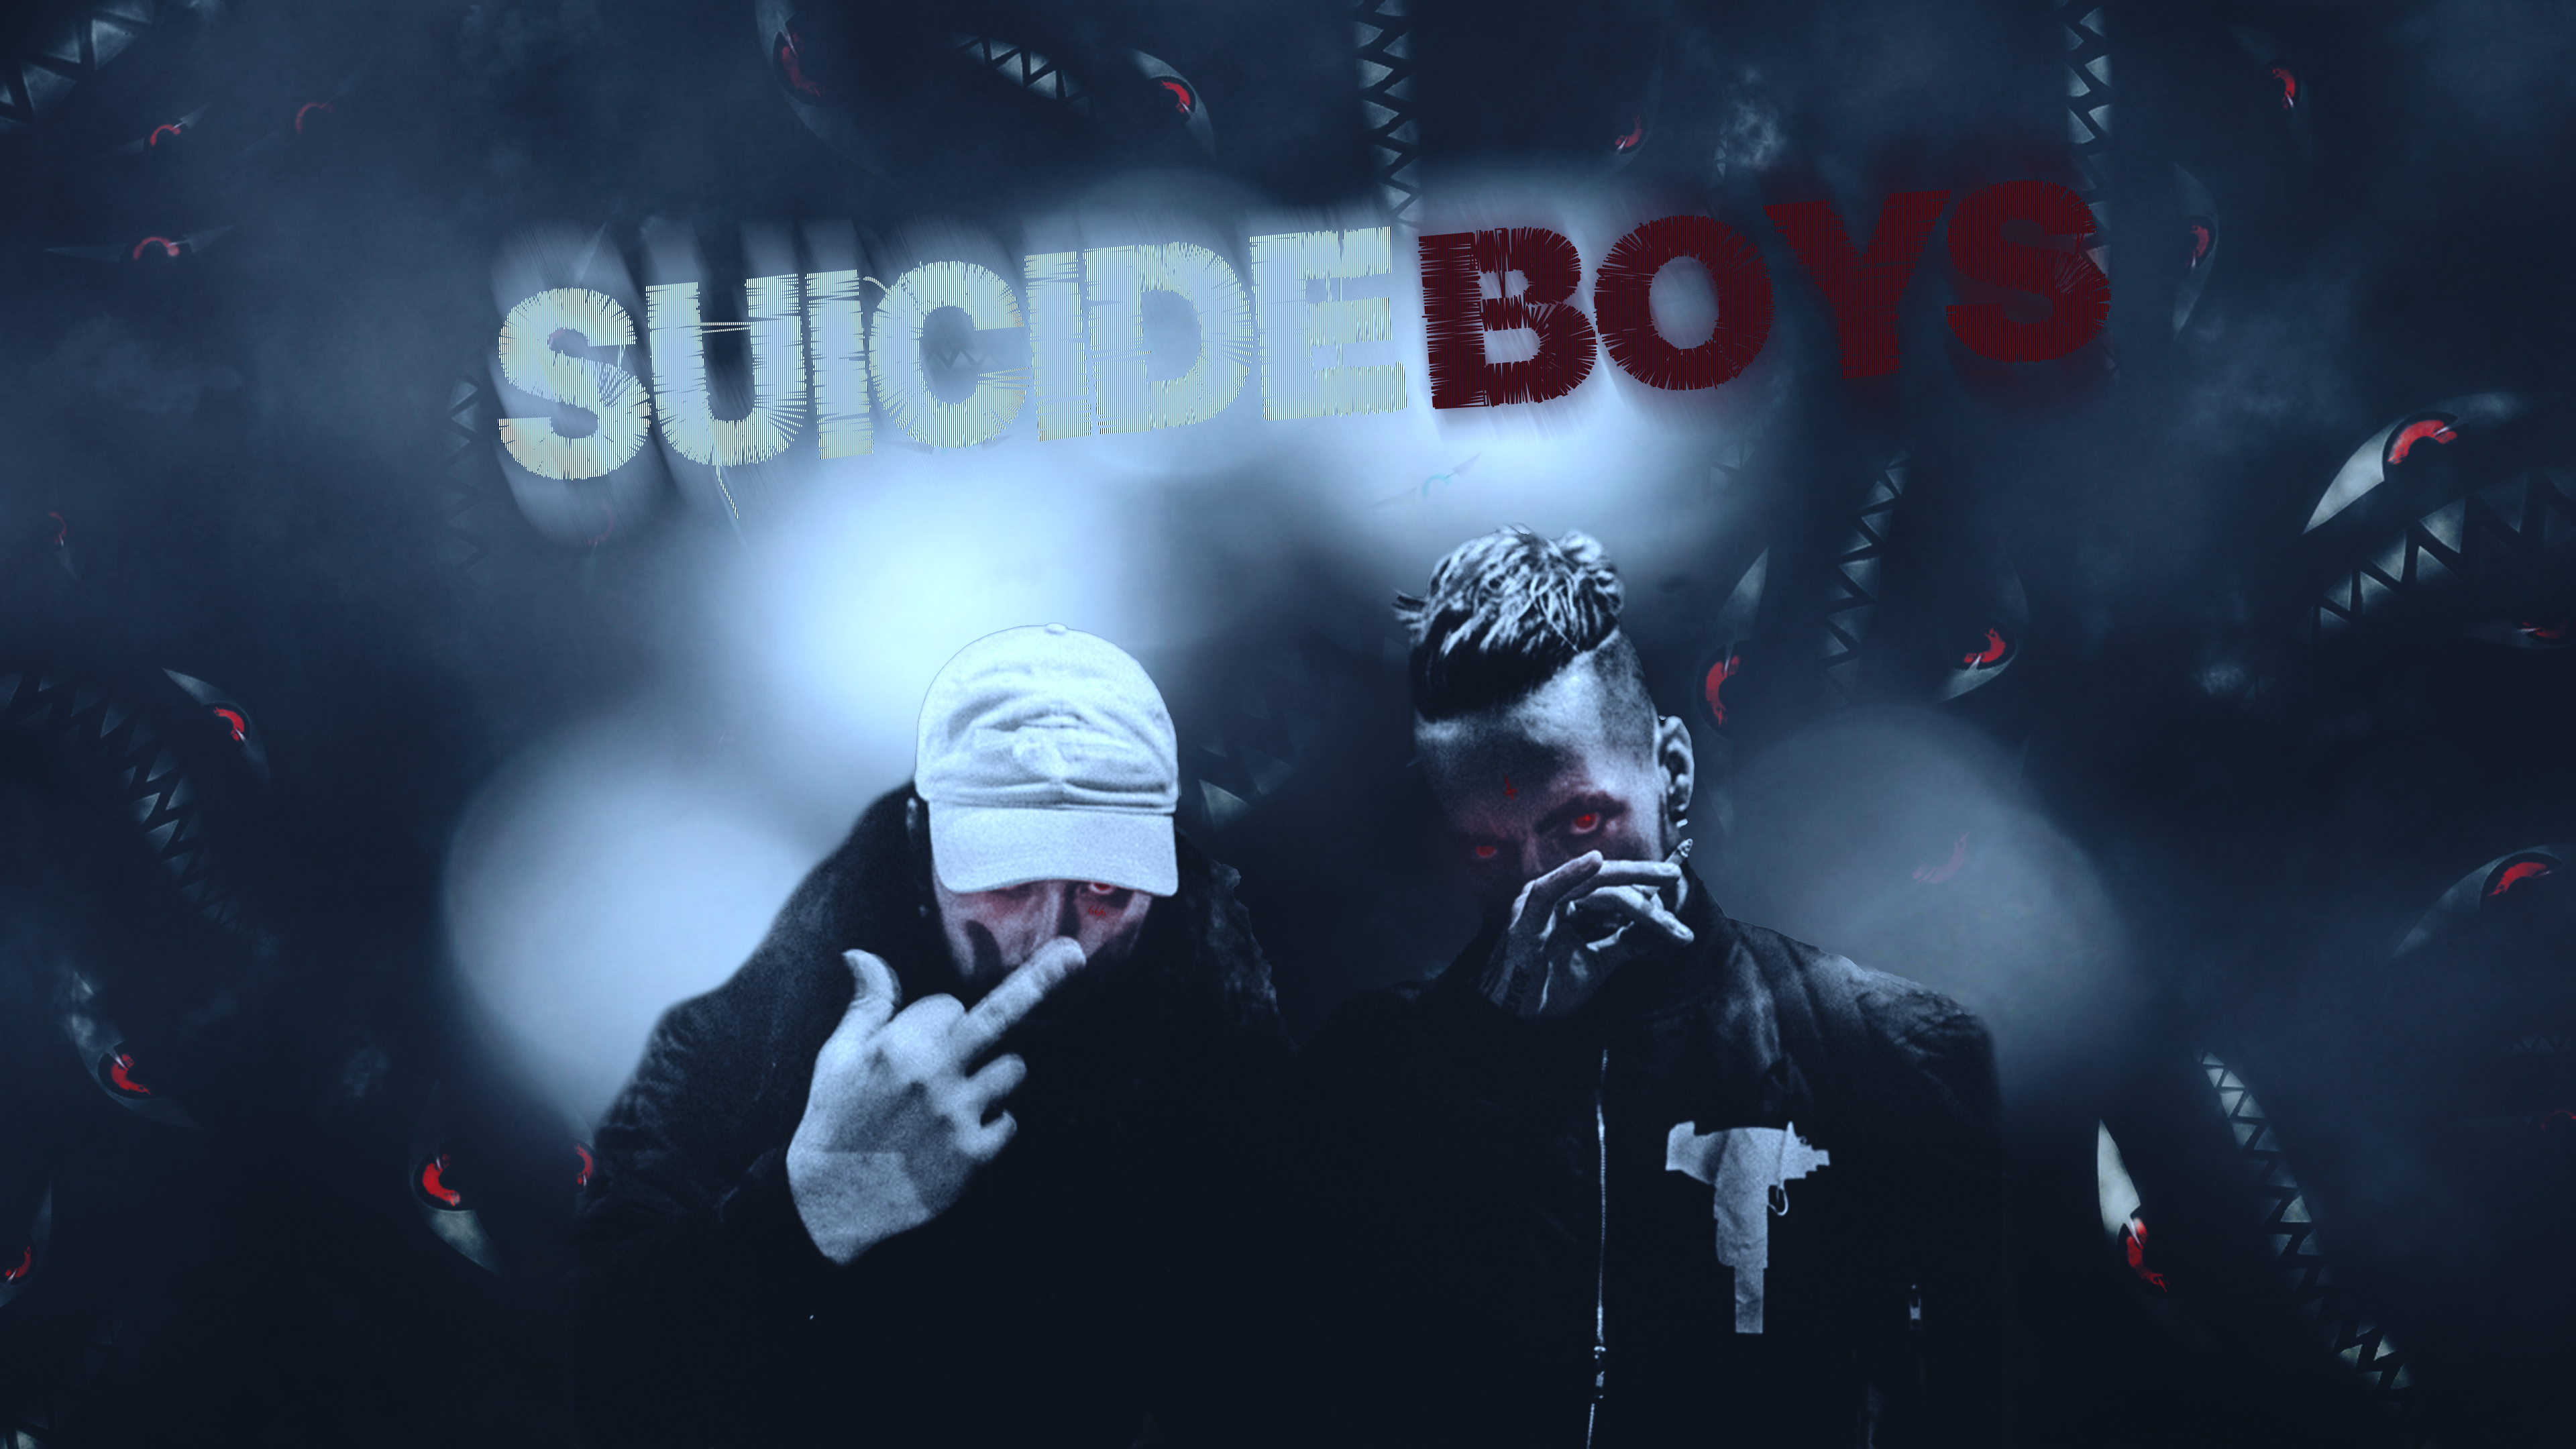 Suicideboys là một nhóm nhạc tài năng với âm nhạc độc đáo và tinh thần đầy cá tính. Hãy cùng xem những hình ảnh về họ, nơi bạn sẽ được trải nghiệm một chút những giai điệu bùng nổ và tinh thần tự do.